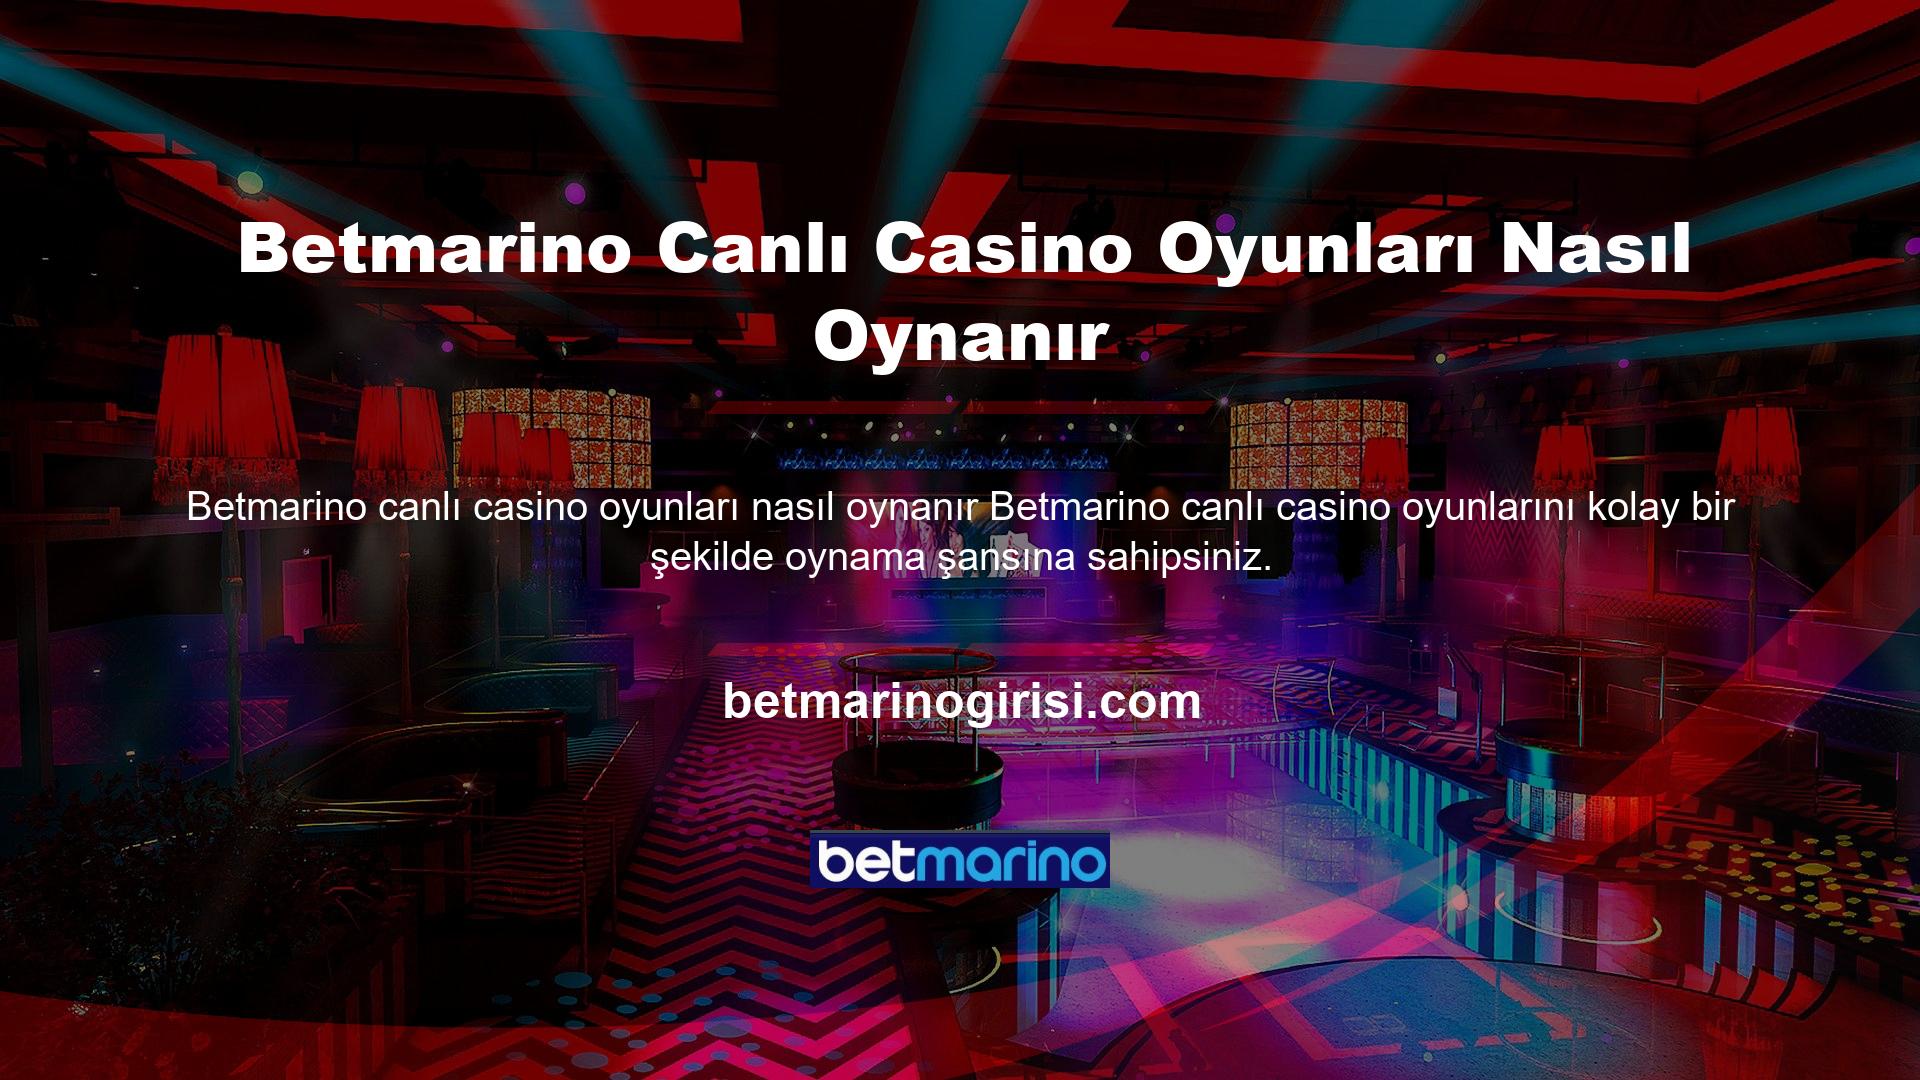 Betmarino, canlı casino bölümlerine erişim için çok sağlam bir sistem kurmuşlardır